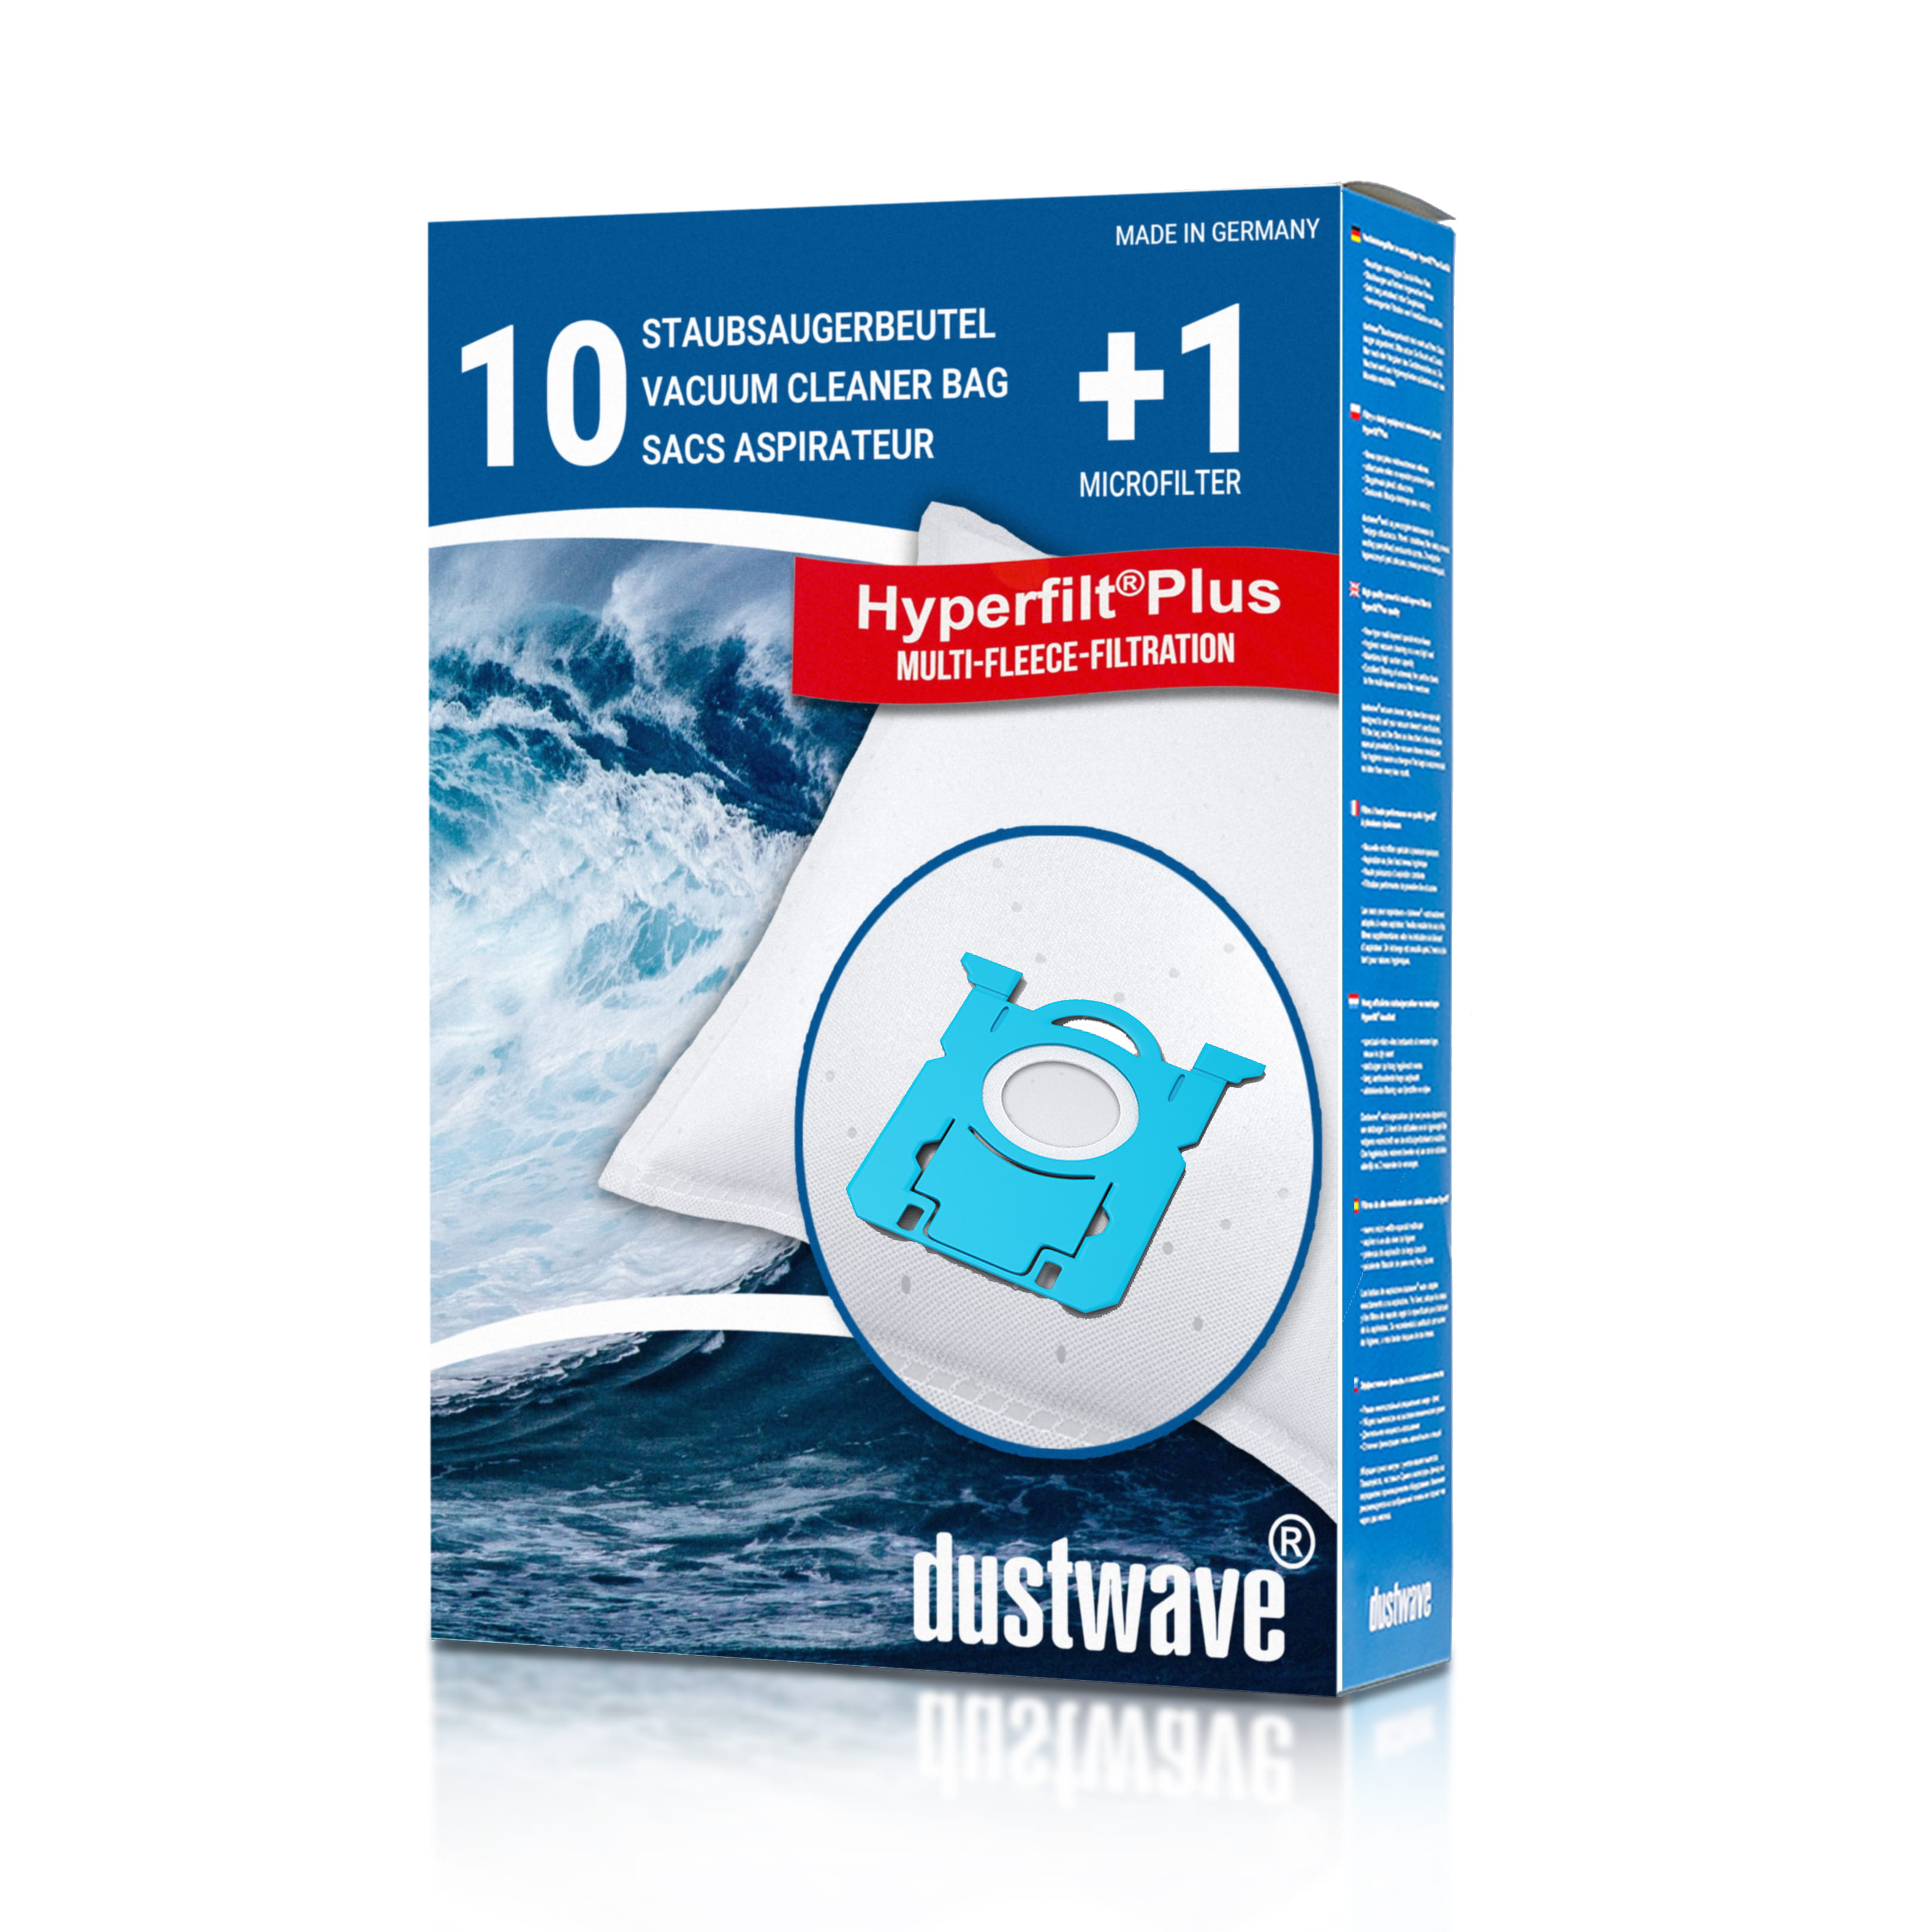 Dustwave® 10 Staubsaugerbeutel für AEG ULTRAONE UOECO - hocheffizient, mehrlagiges Mikrovlies mit Hygieneverschluss - Made in Germany